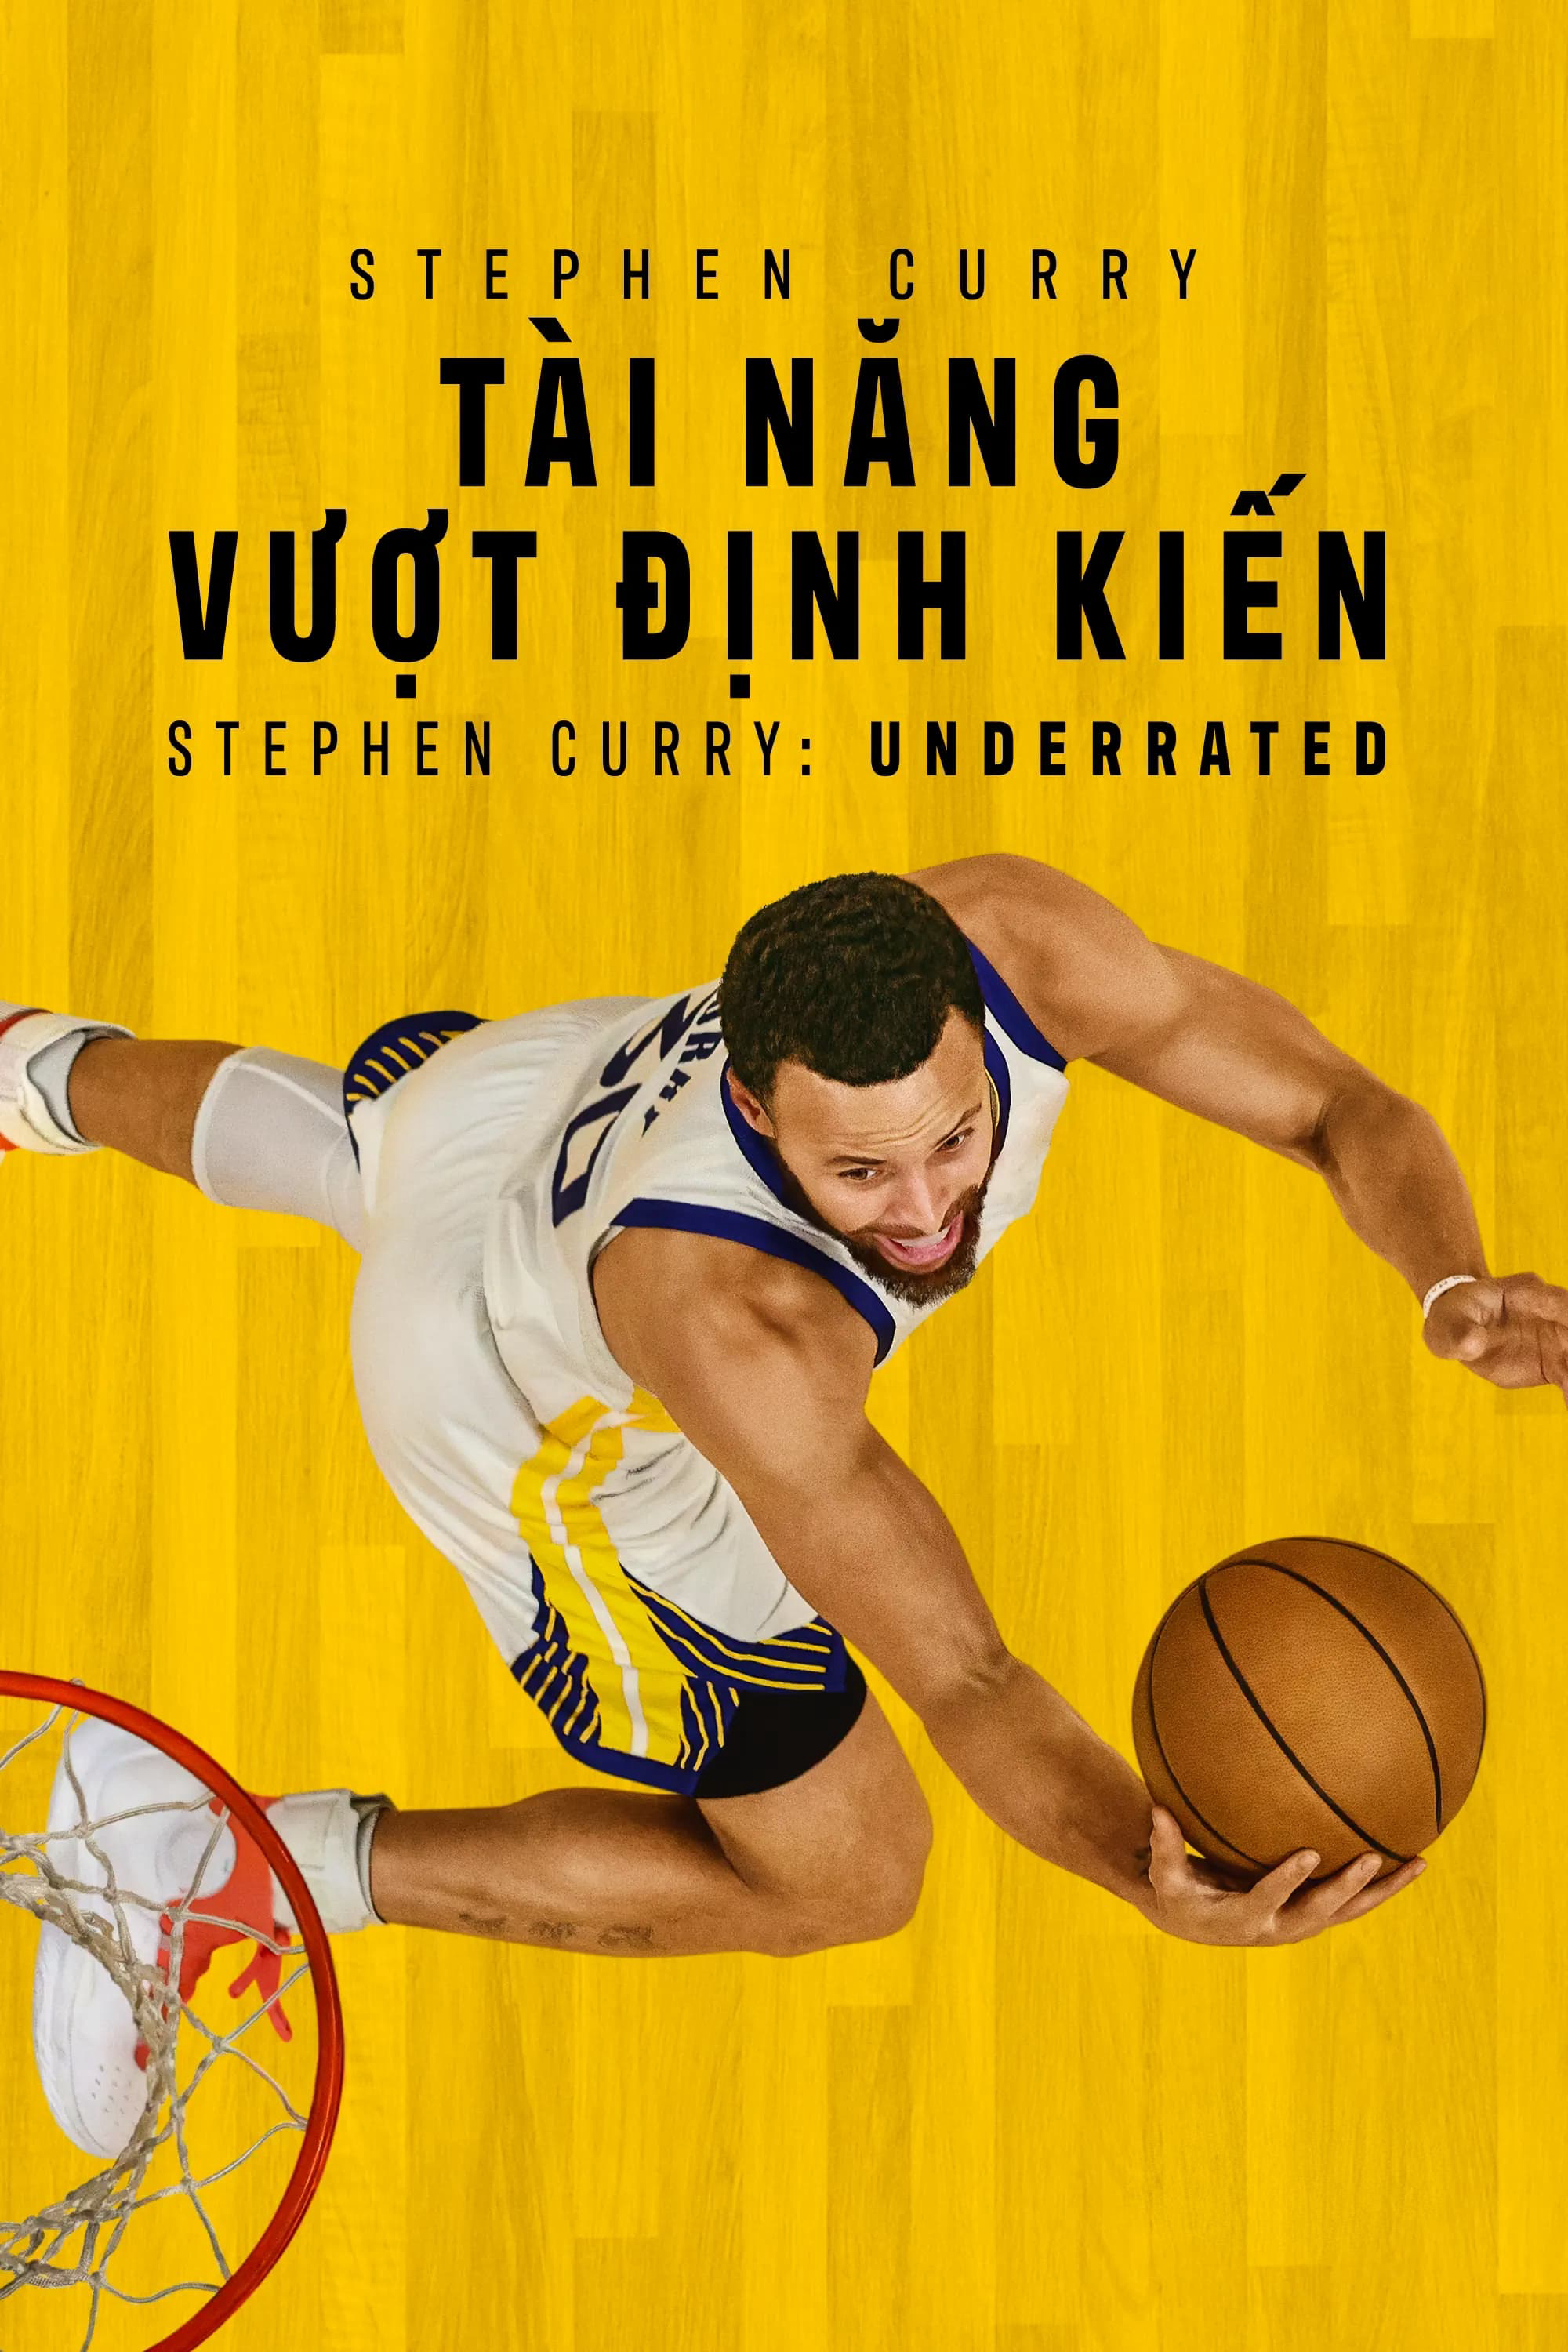 Poster Phim Stephen Curry: Tài Năng Vượt Định Kiến (Stephen Curry: Underrated)